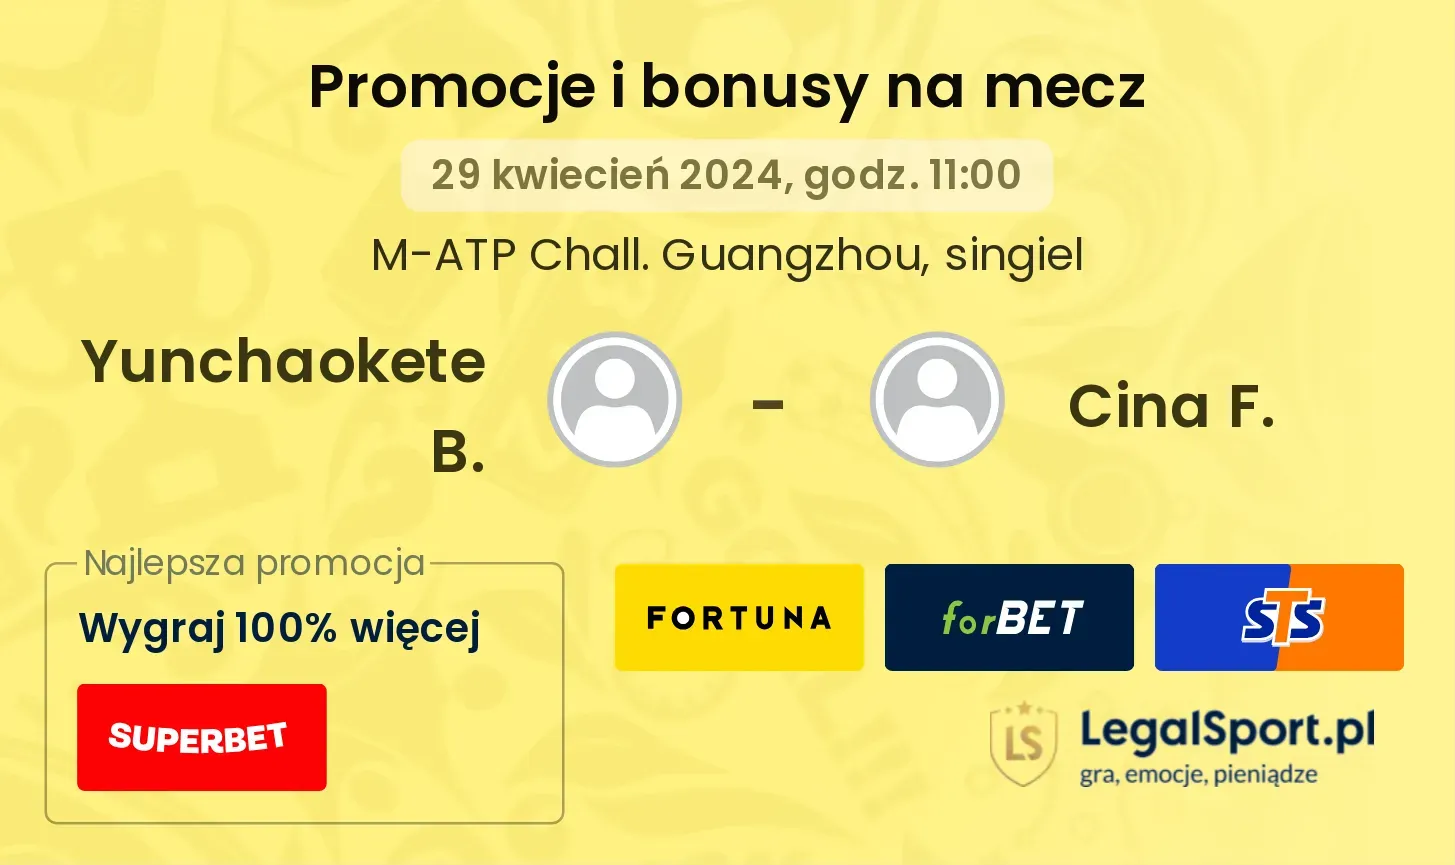 Yunchaokete B. - Cina F. promocje bonusy na mecz